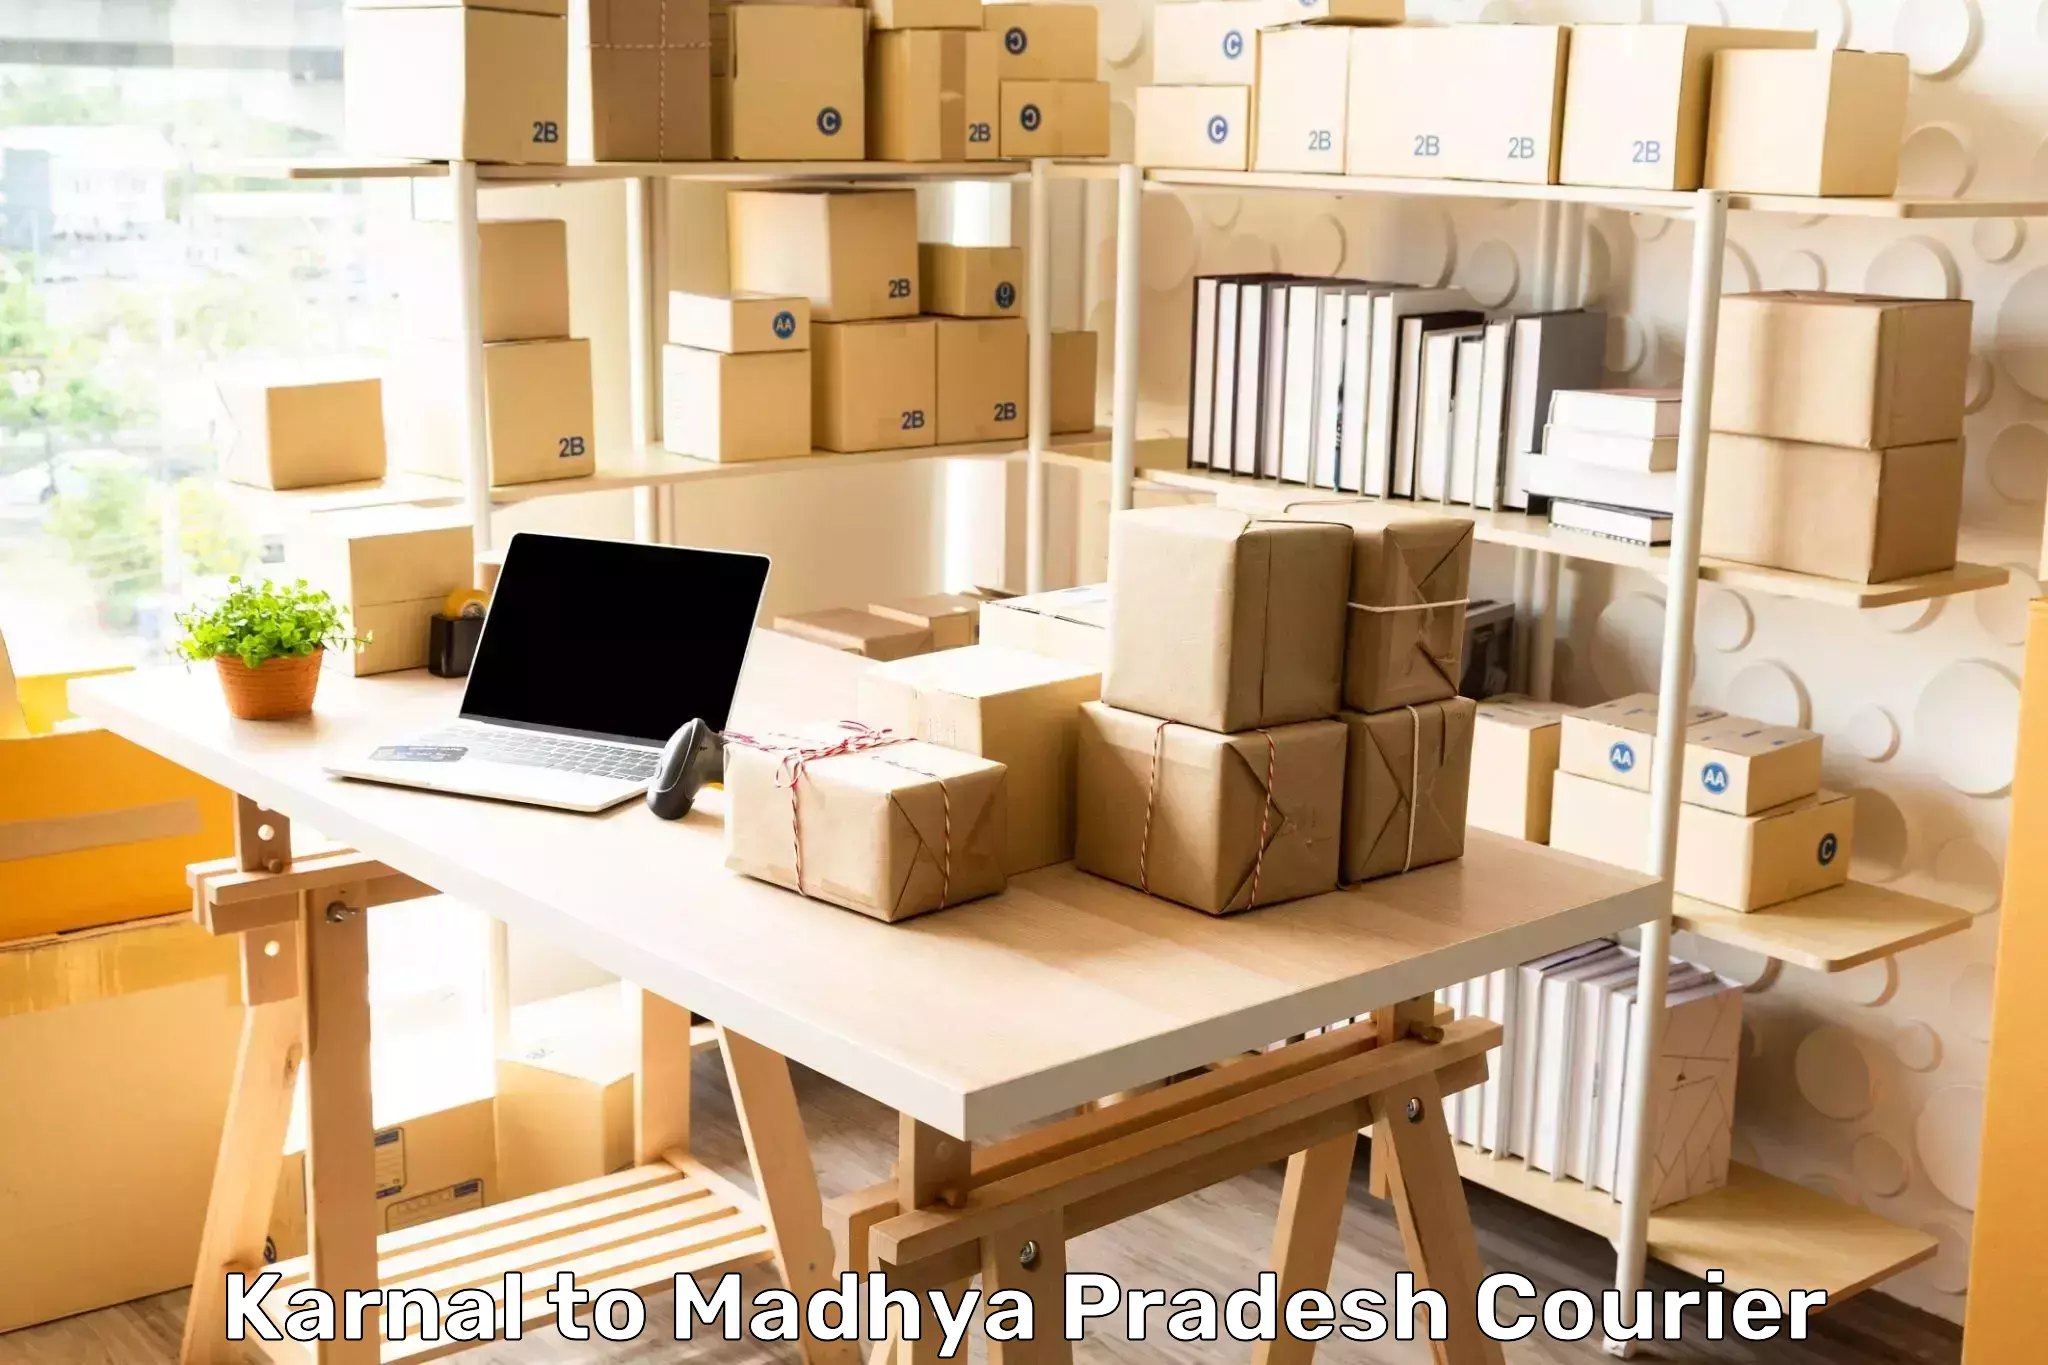 24-hour delivery options Karnal to Madhya Pradesh